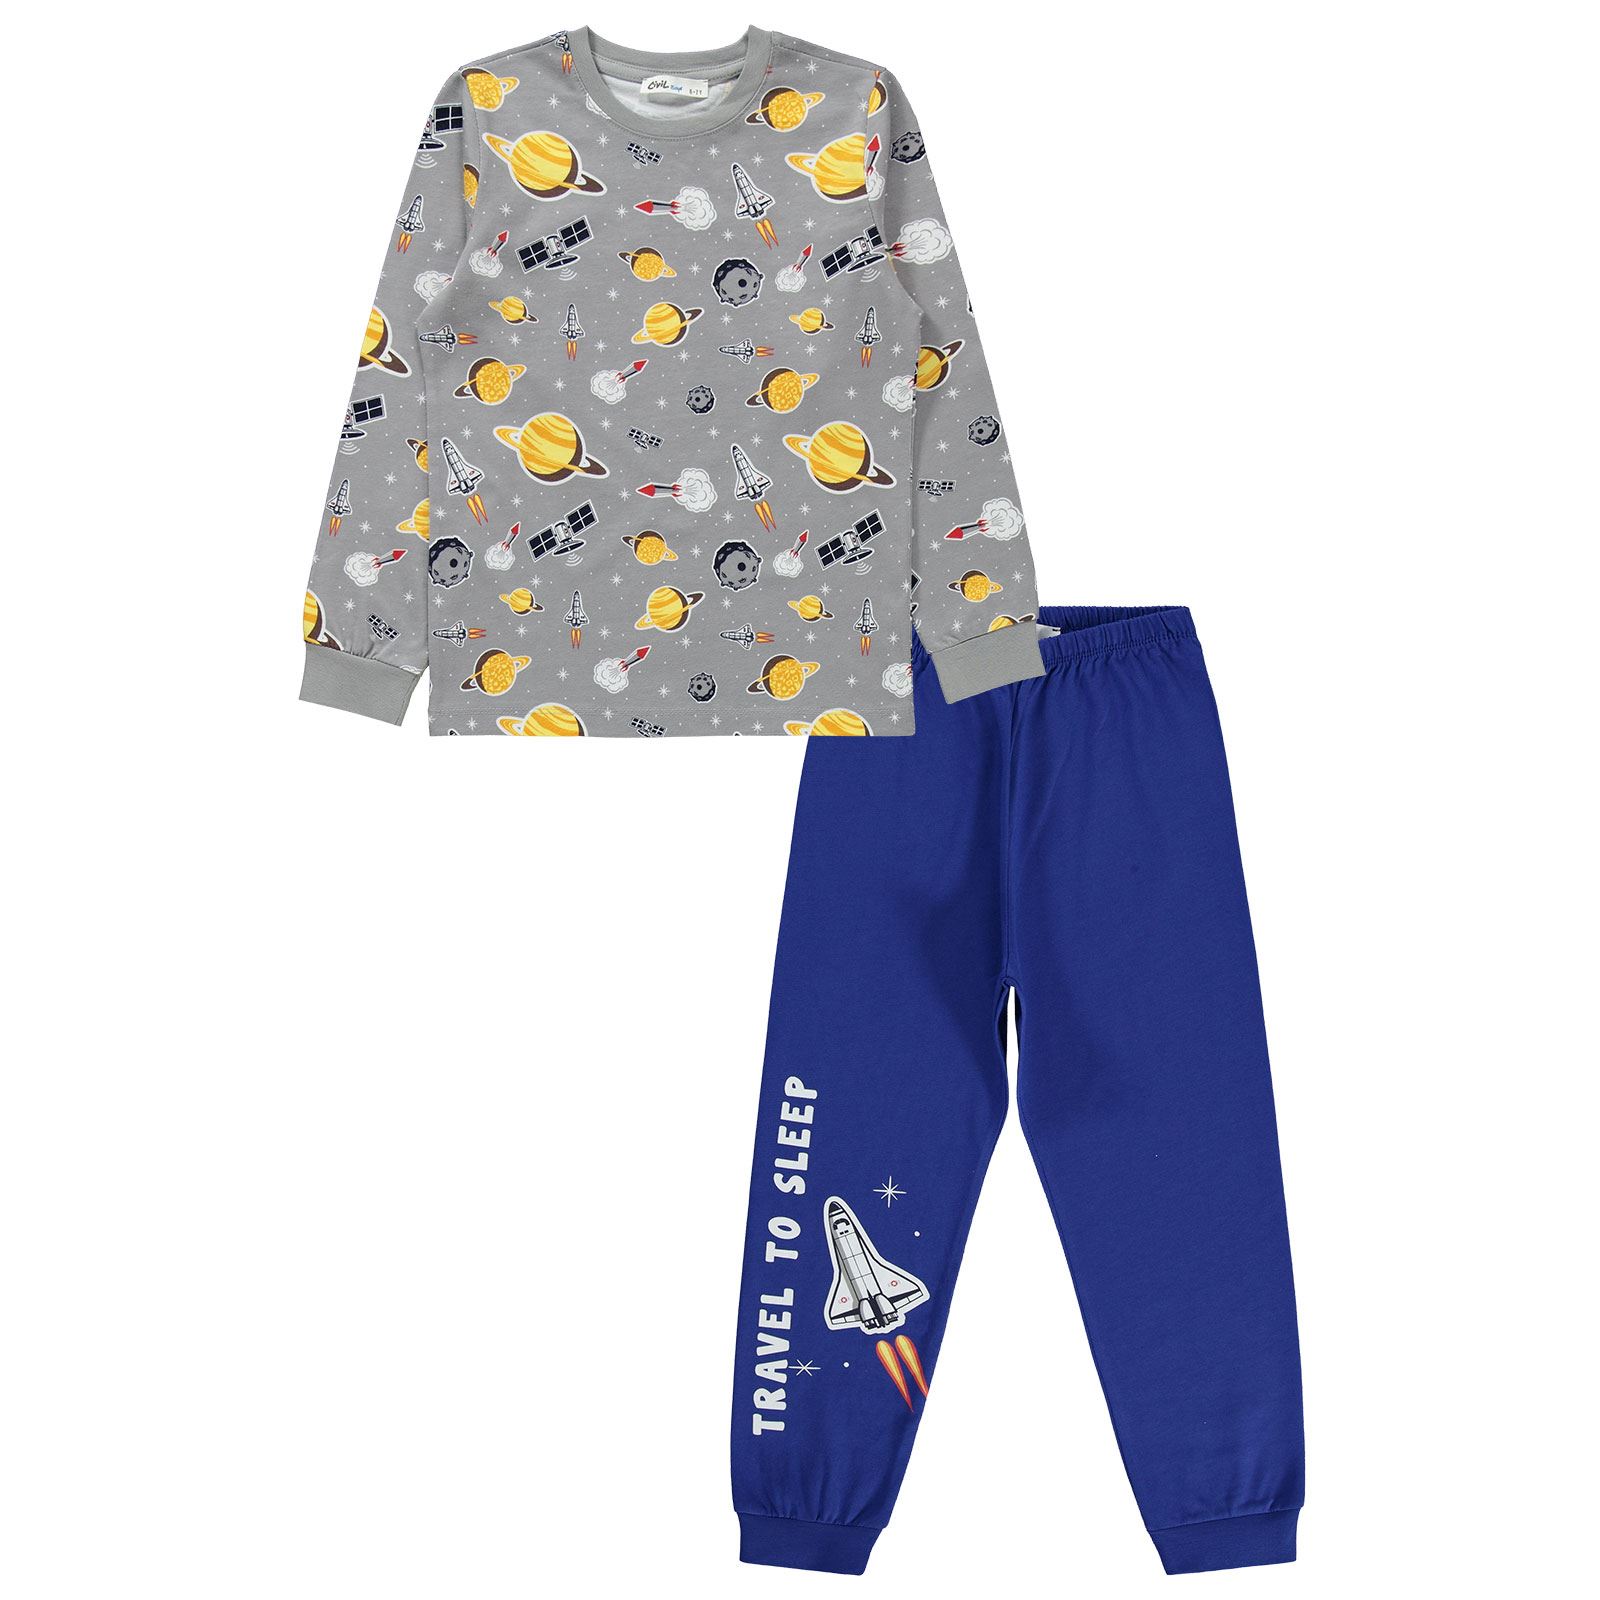 Civil Boys Erkek Çocuk Pijama Takımı 10-13 Yaş Gri